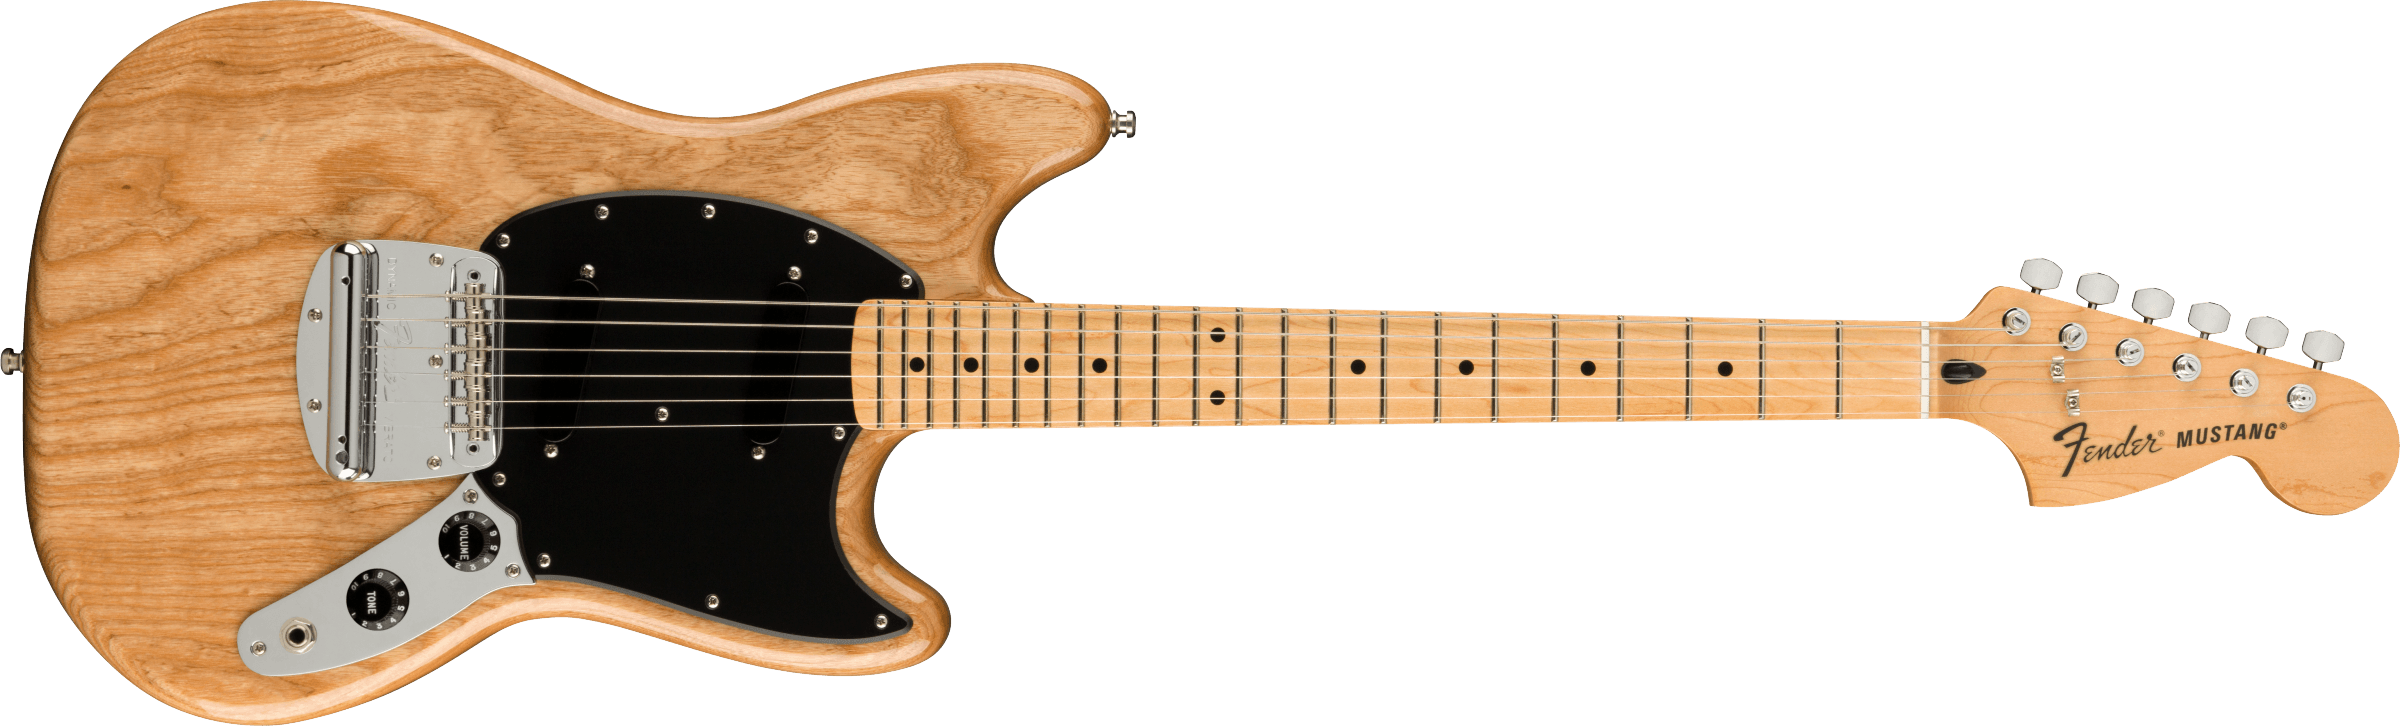 Fender Artistシリーズ エレキギターBen Gibbard Mustang®新品在庫 ...